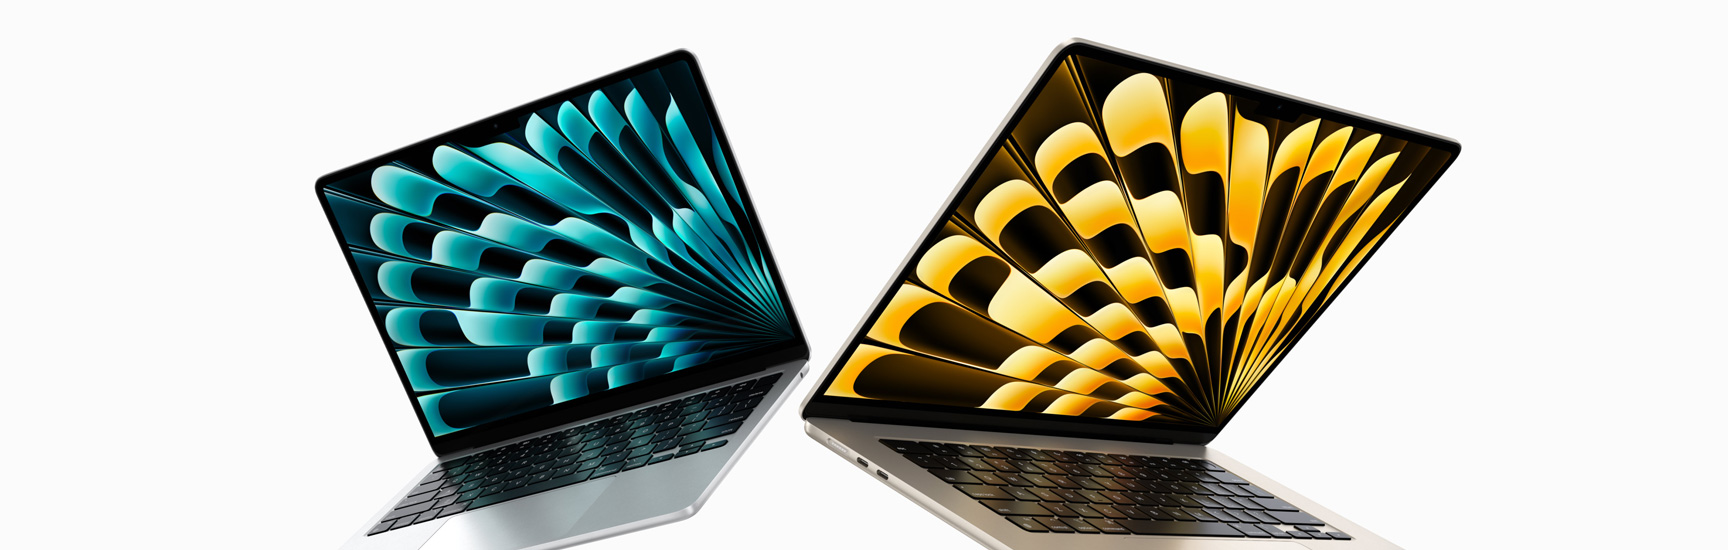 Tampilan depan model MacBook Air 13 inci dan 15 inci dalam warna Perak dan Starlight yang terbuka sebagian dan memperlihatkan perbedaan ukuran layar.